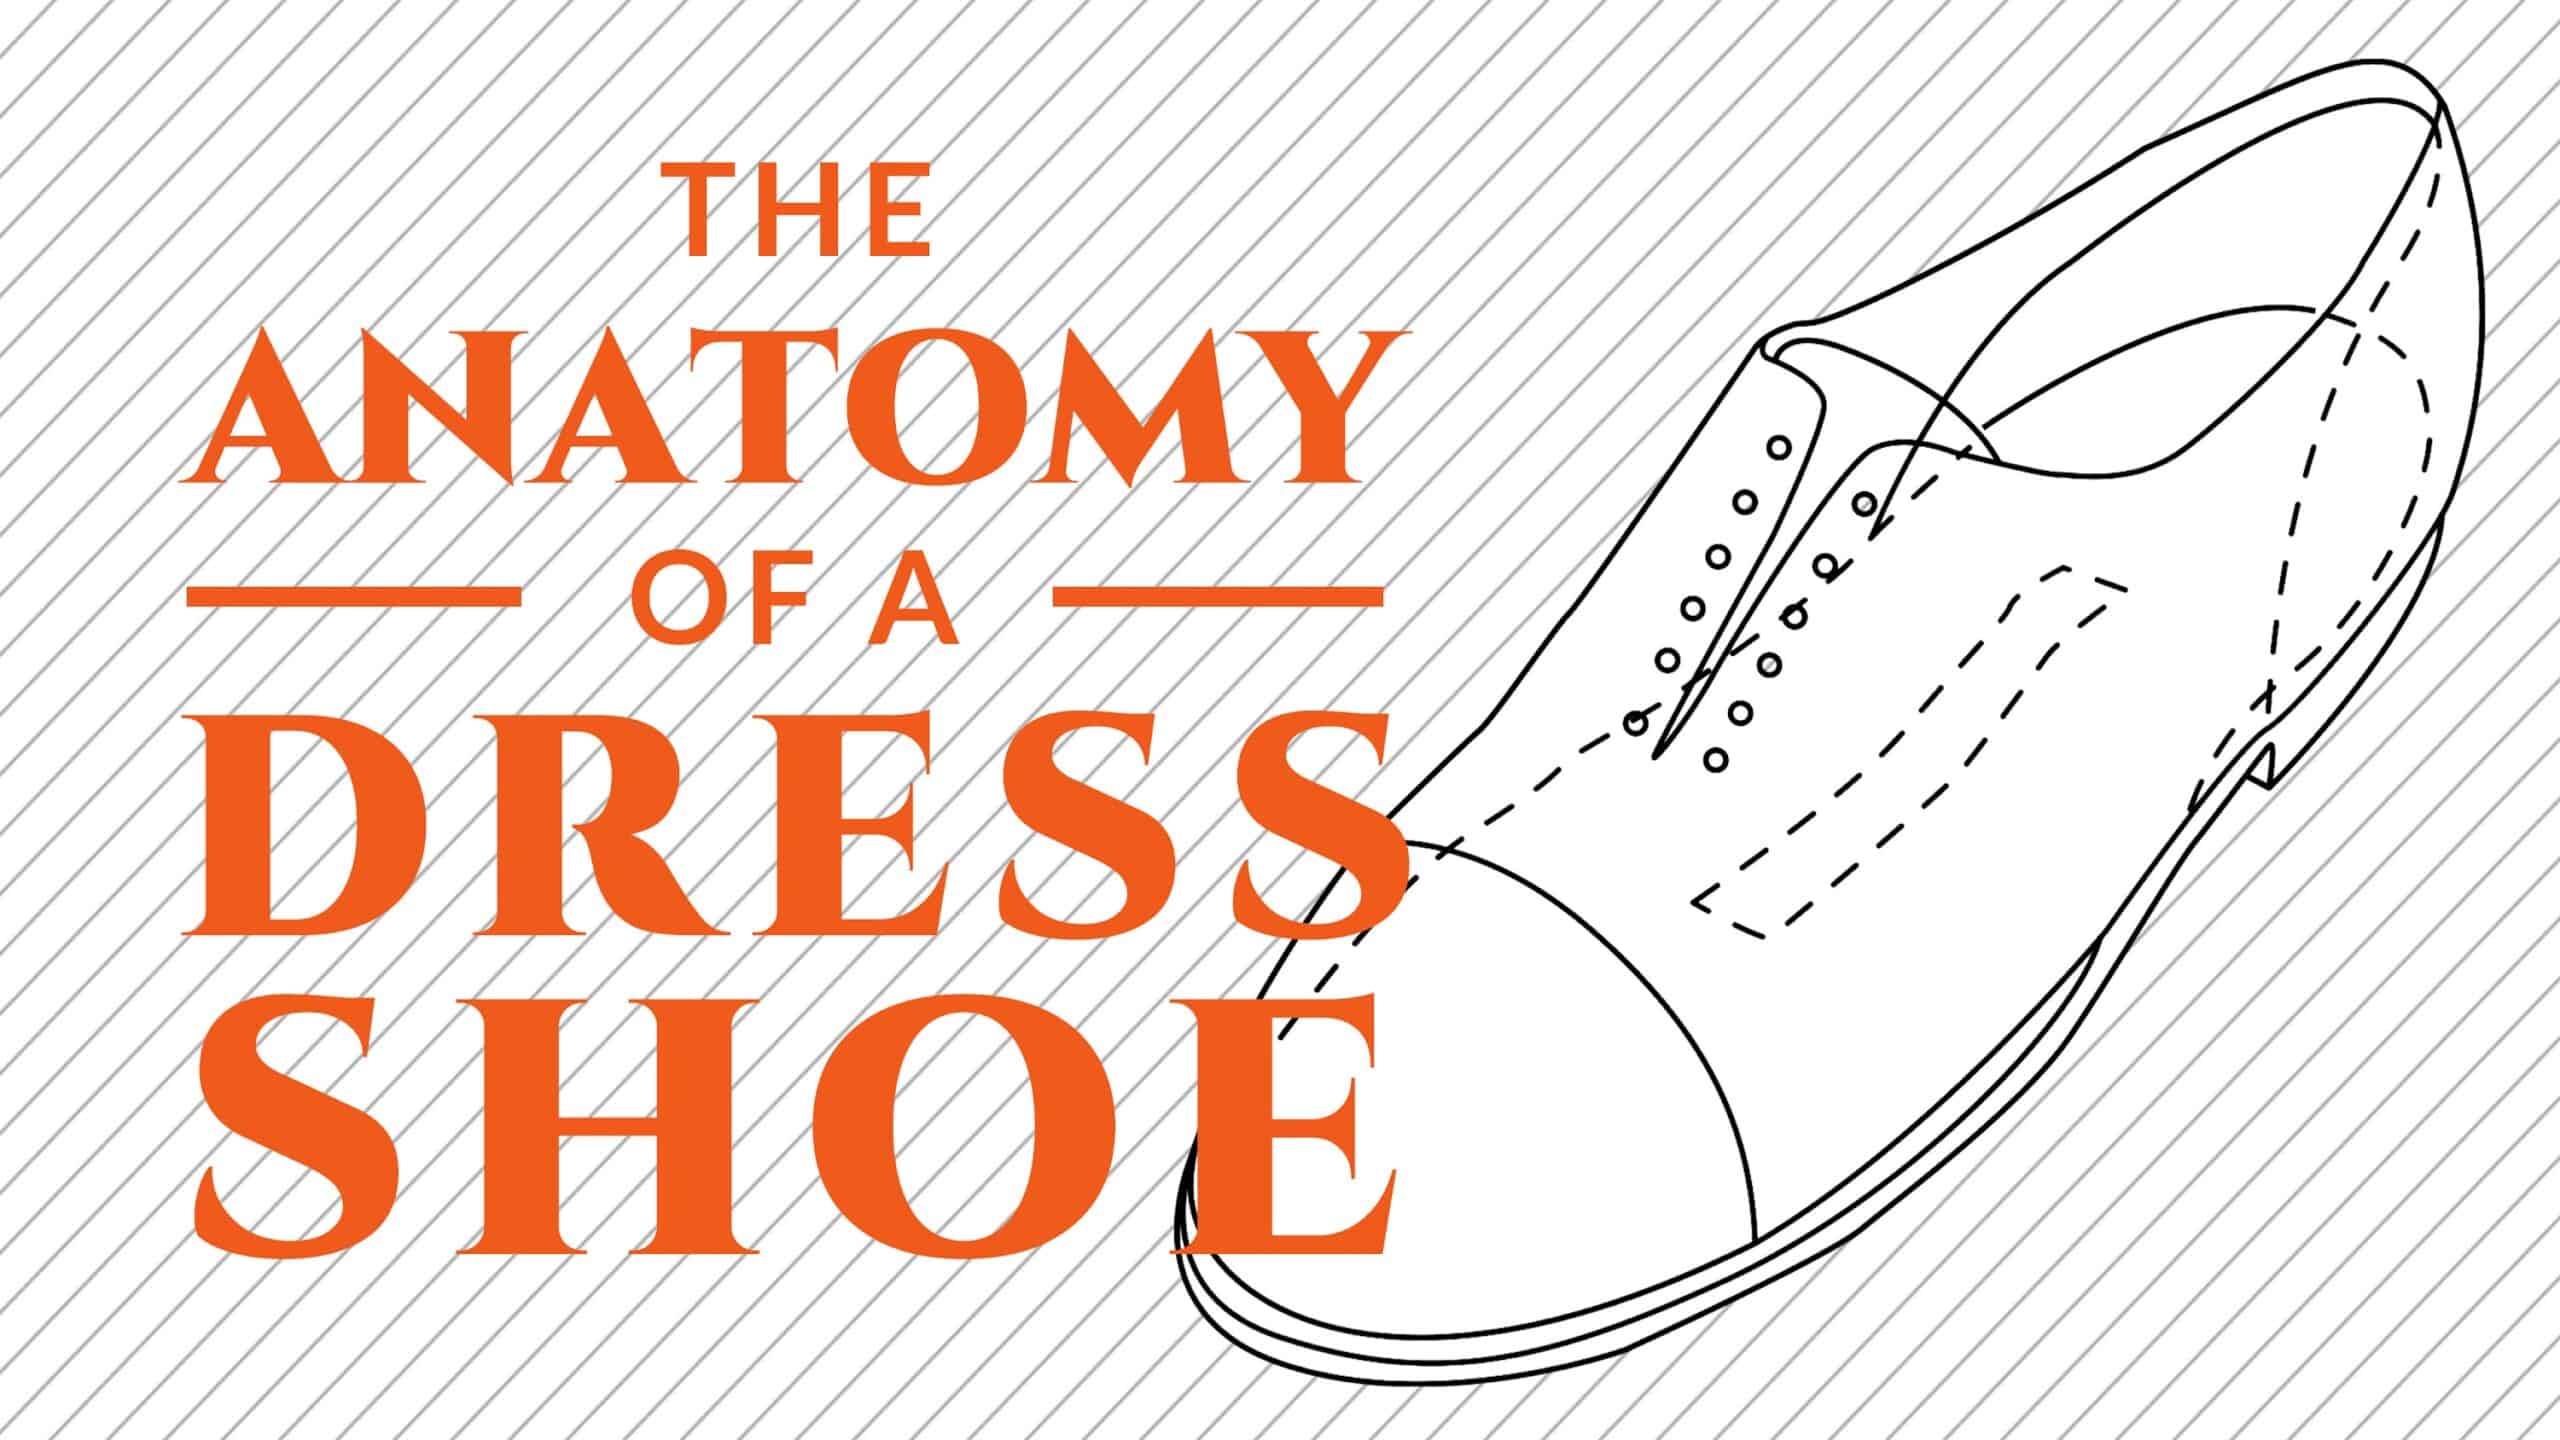 anatomy of a dress shoe 3840x2160 scaled